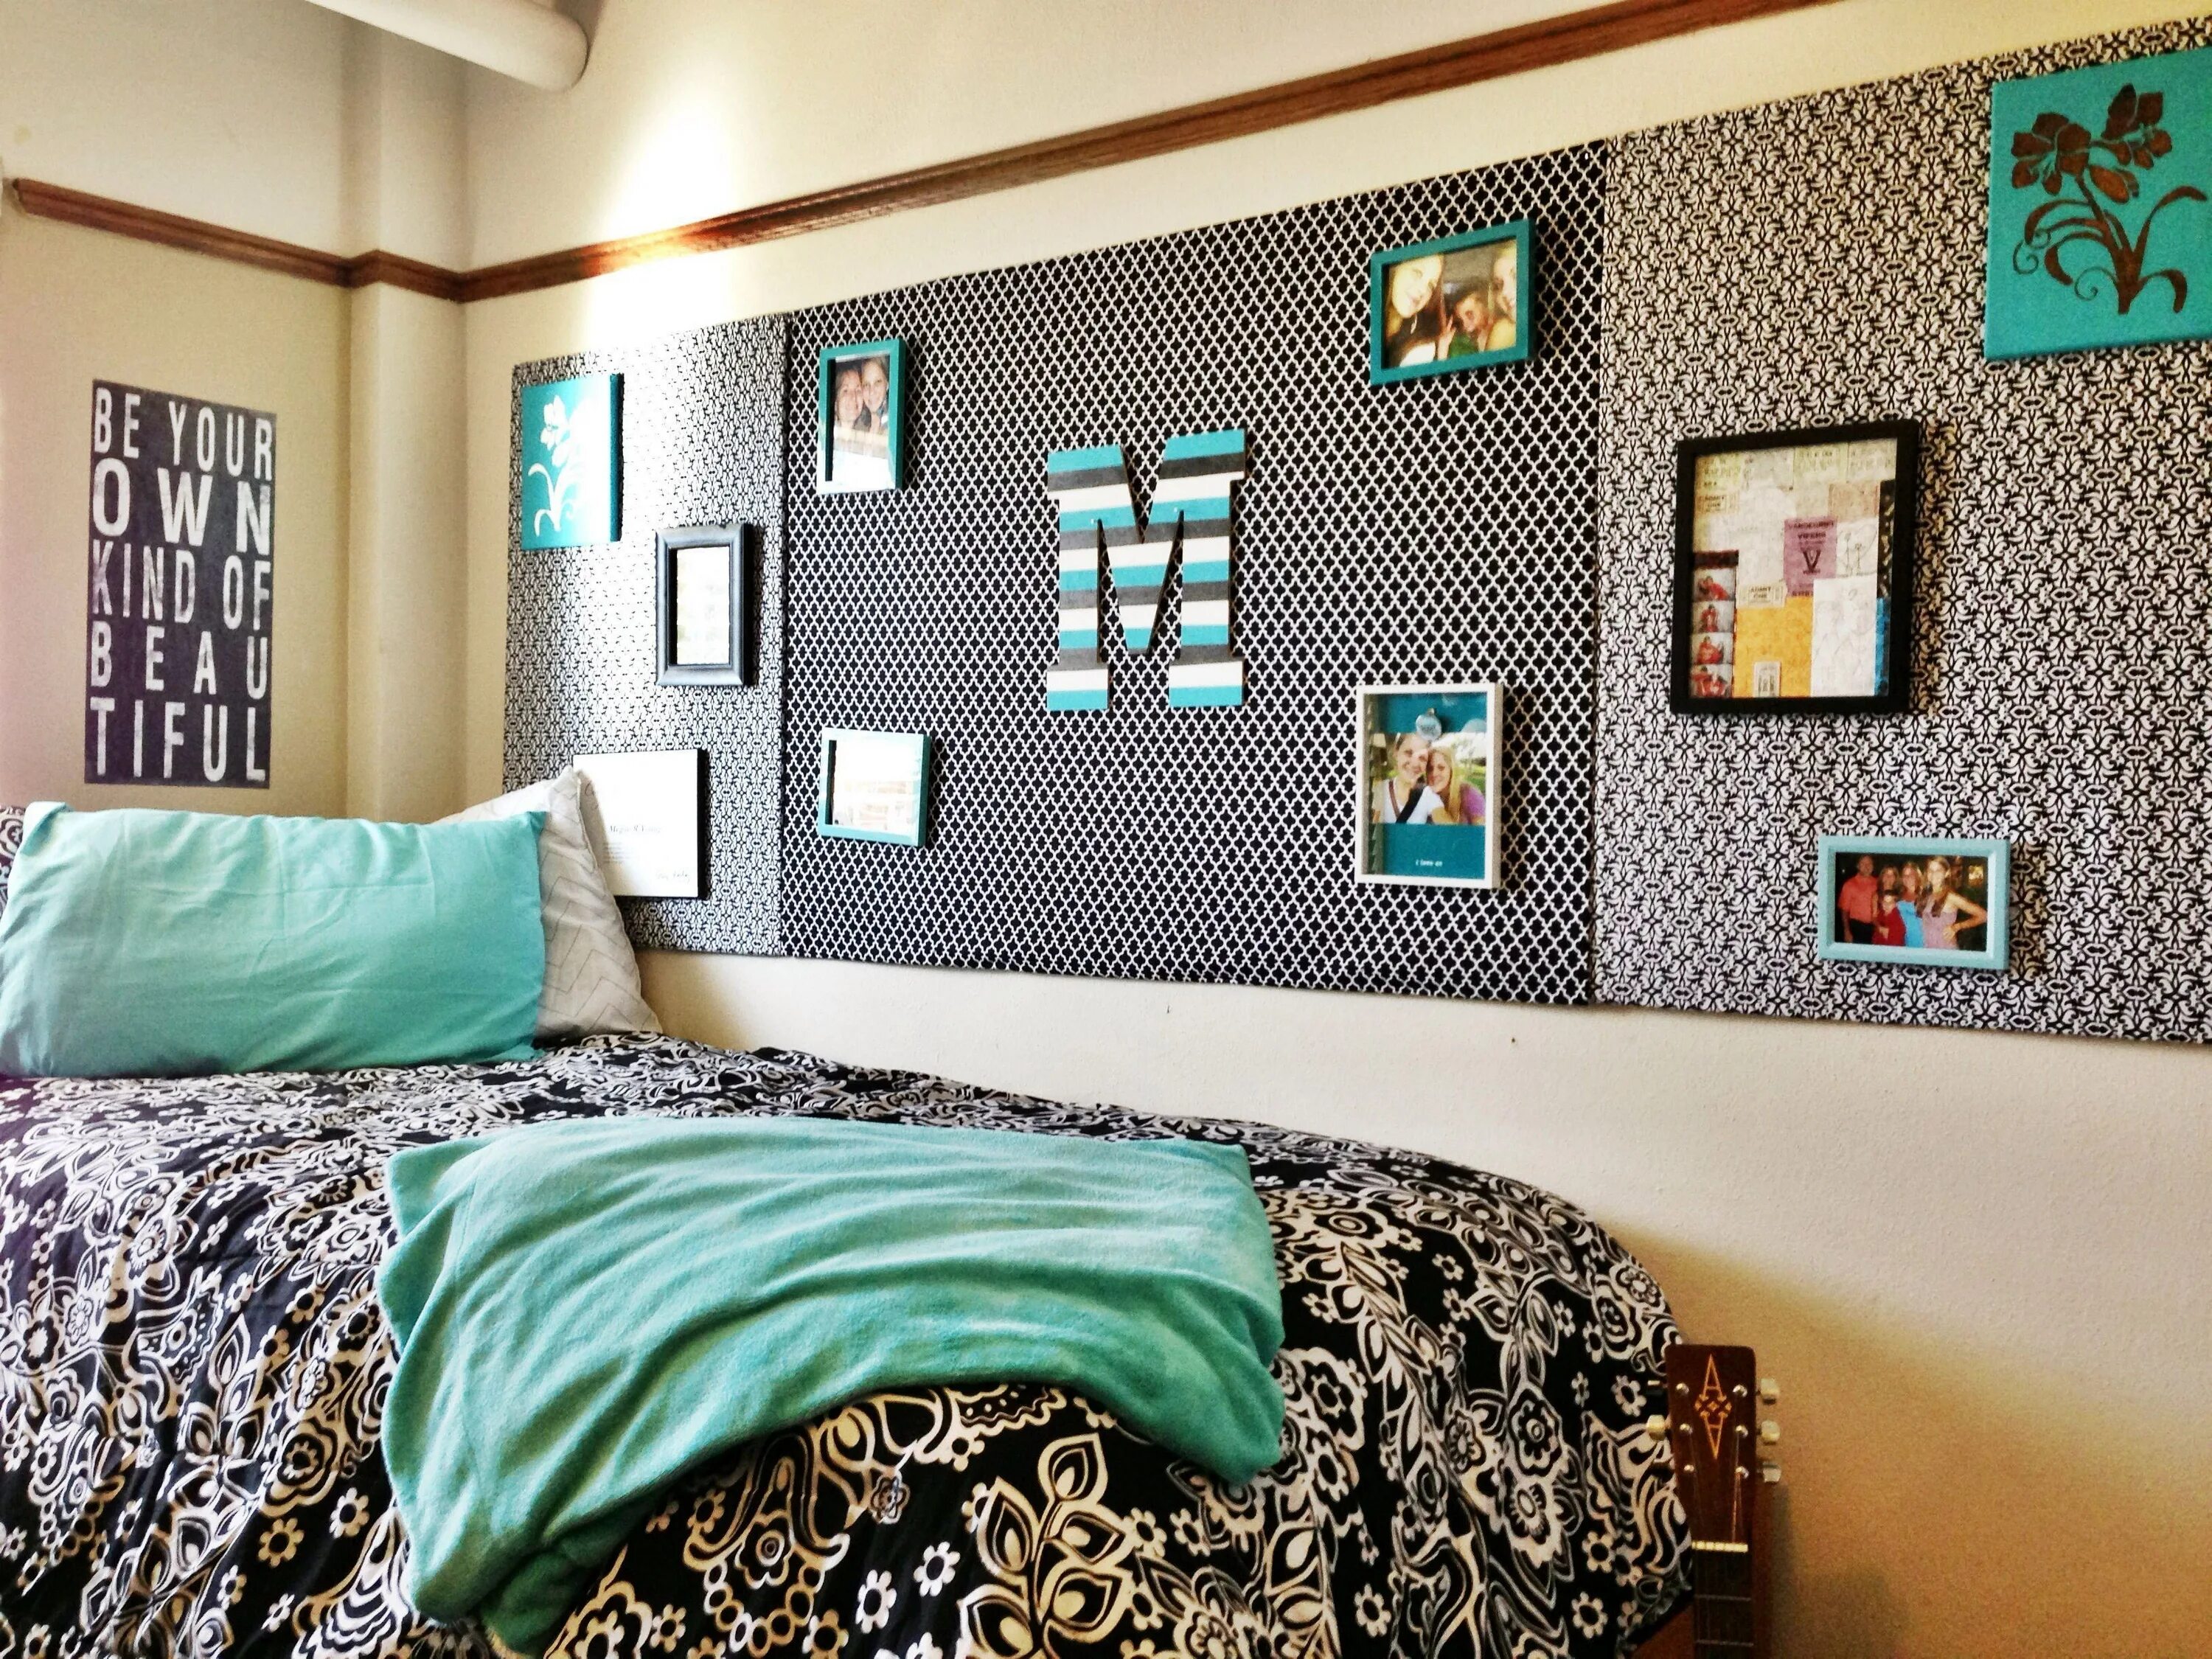 Что можно повесить в комнату. Дизайн для комнаты в общежитии обоев. Цвет стен в общежитии. Оформление стены в комнате общежития. Как украсить стену над кроватью в общаге.